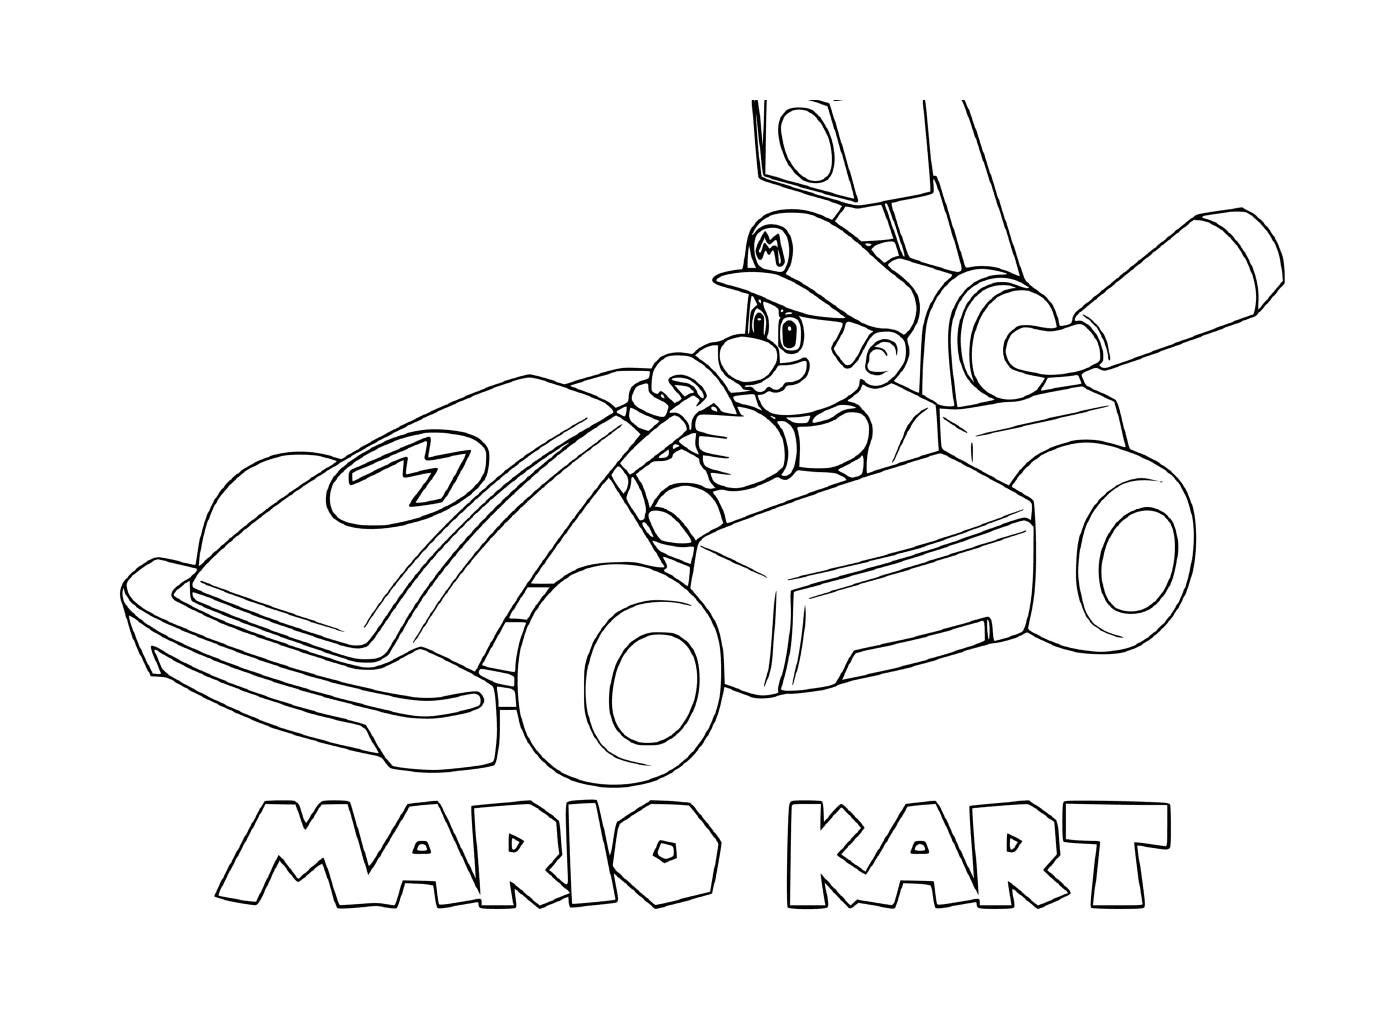  Mario Kart at high speed 